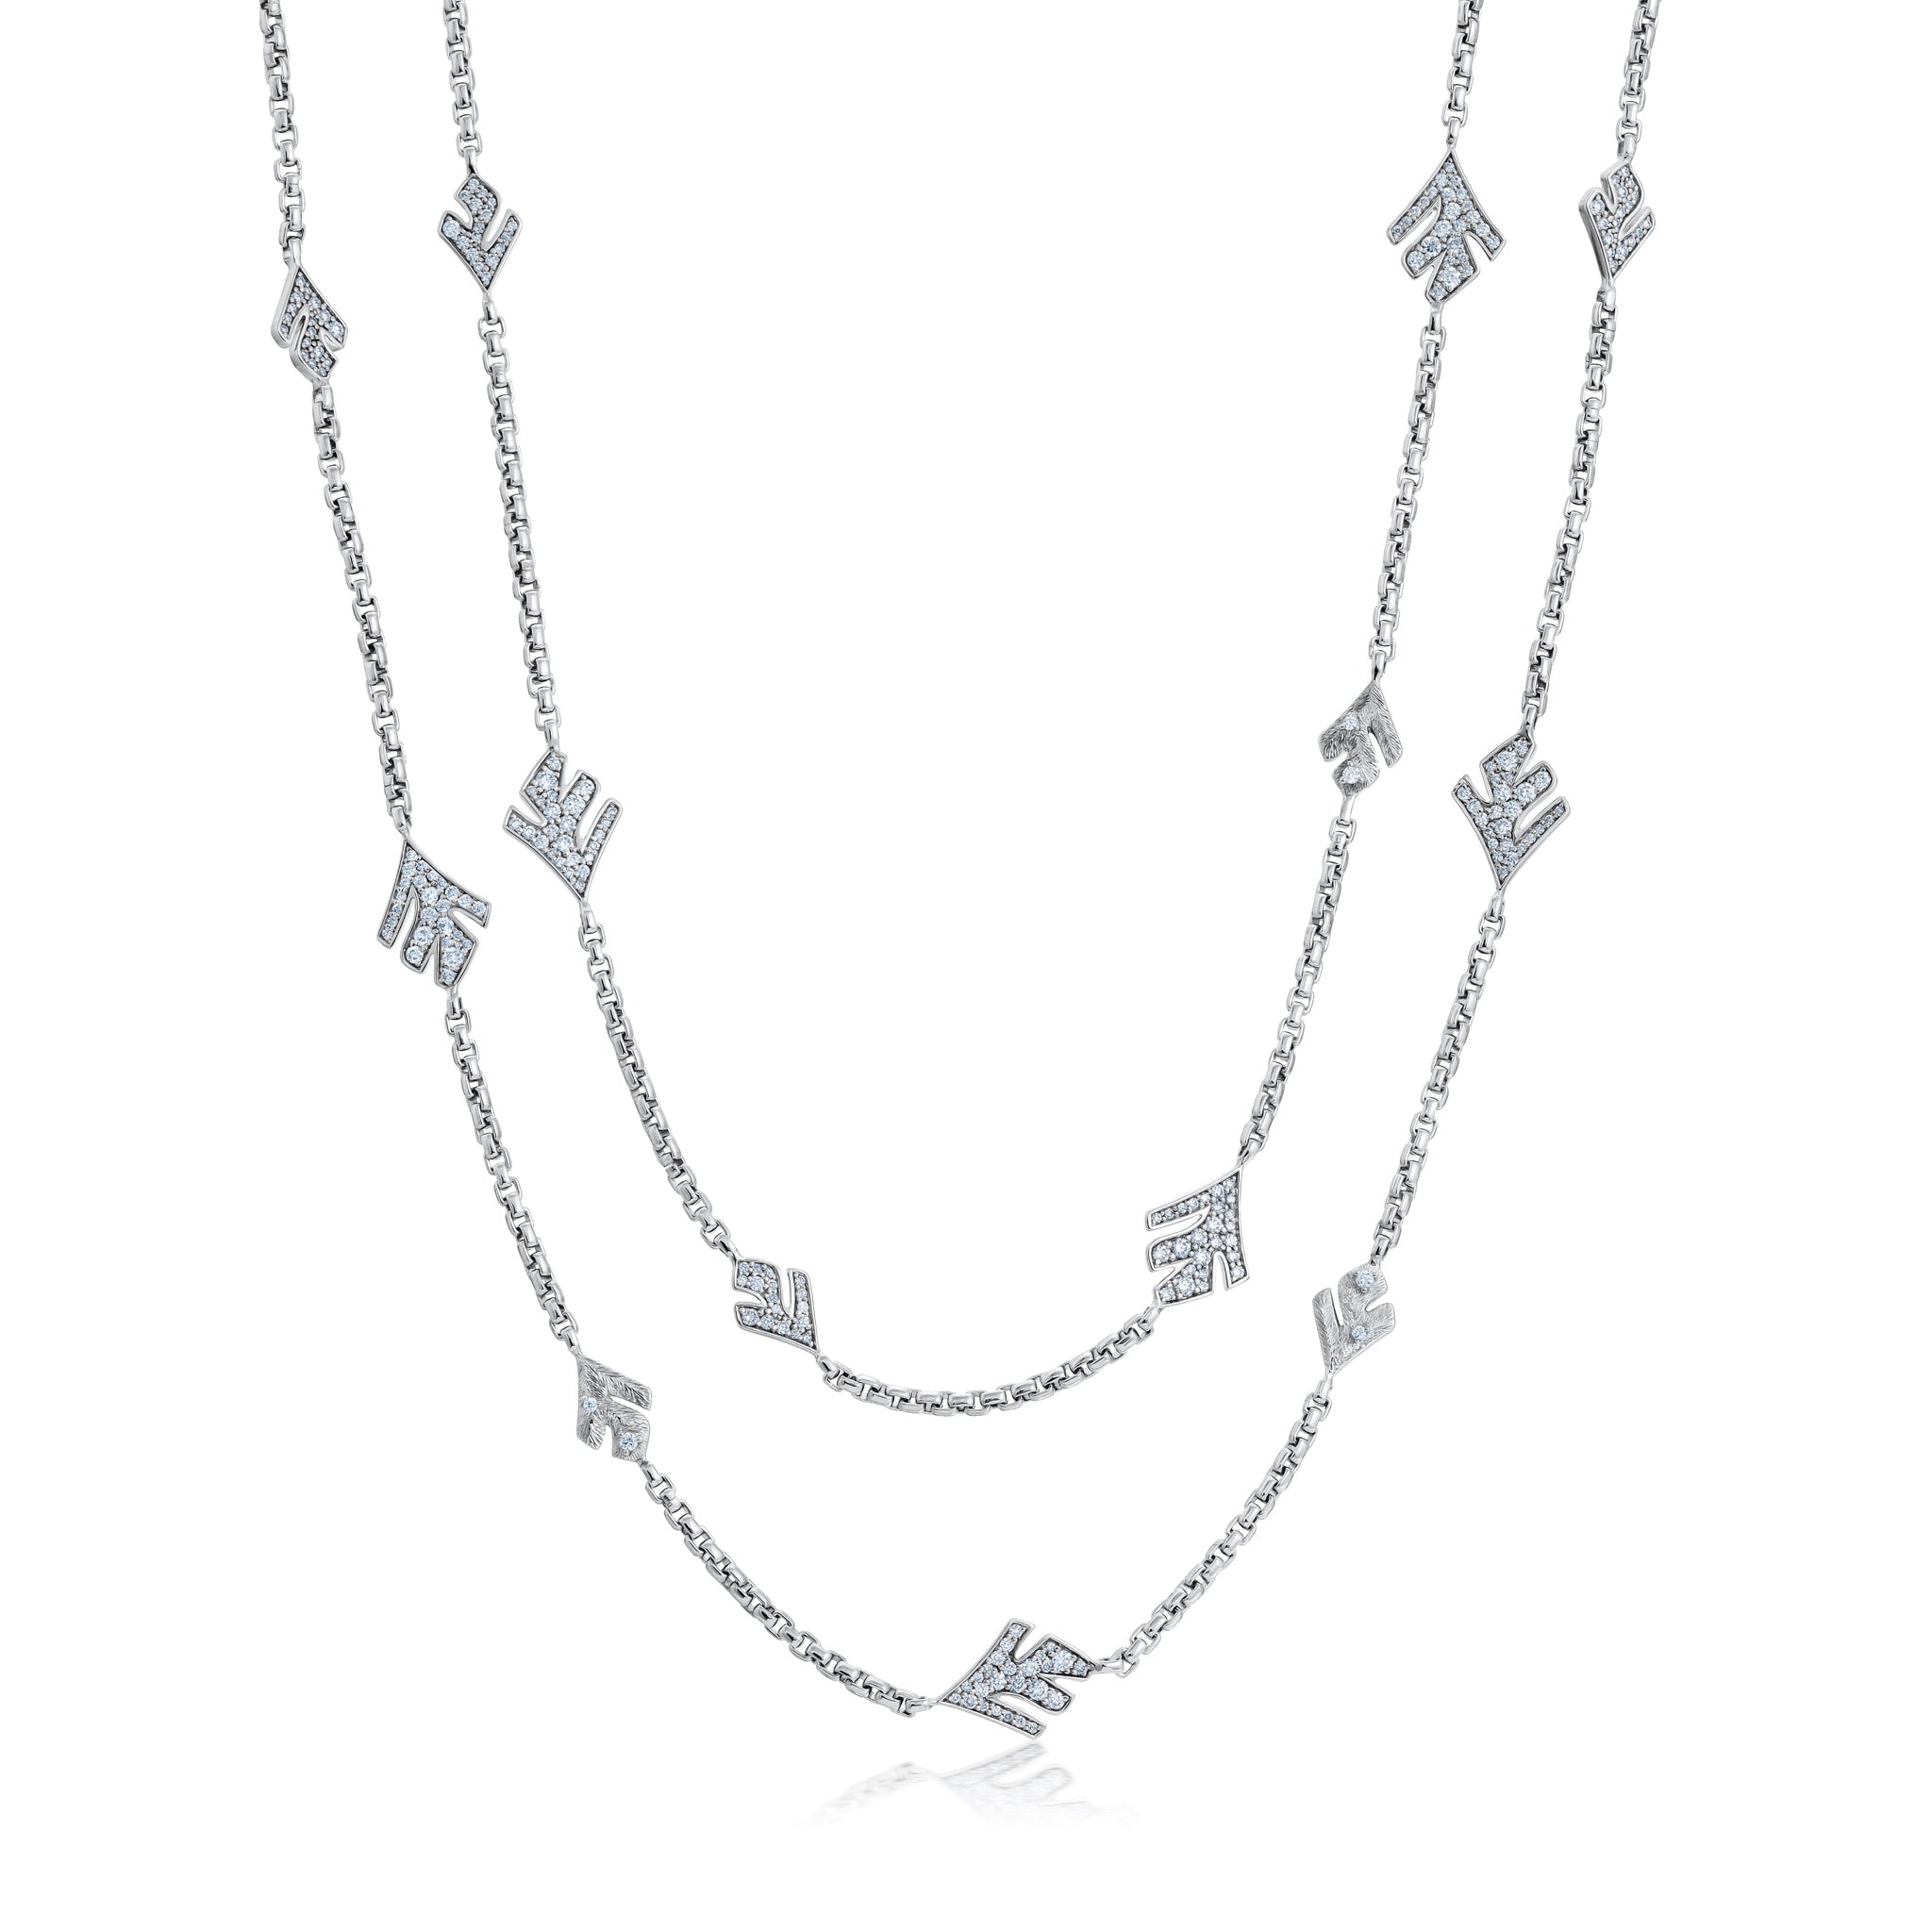 36" Diamond Samambaia Necklace